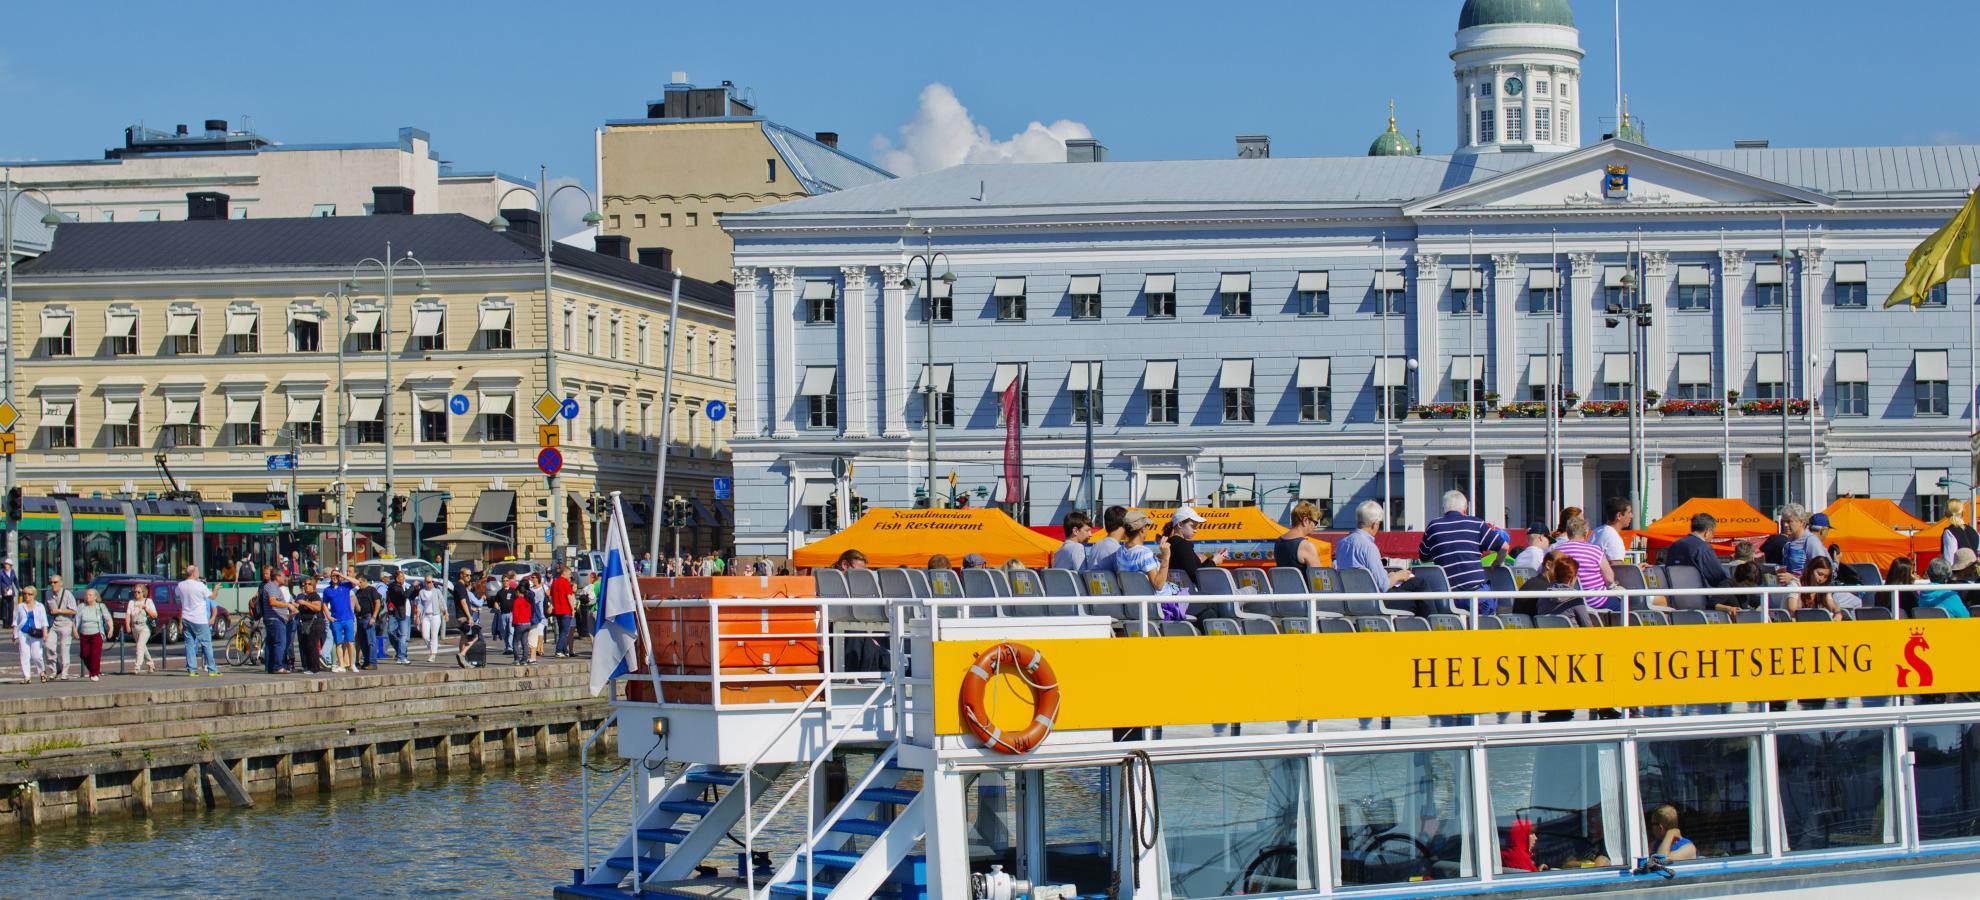 Helsinki sightseeing on an island cruise